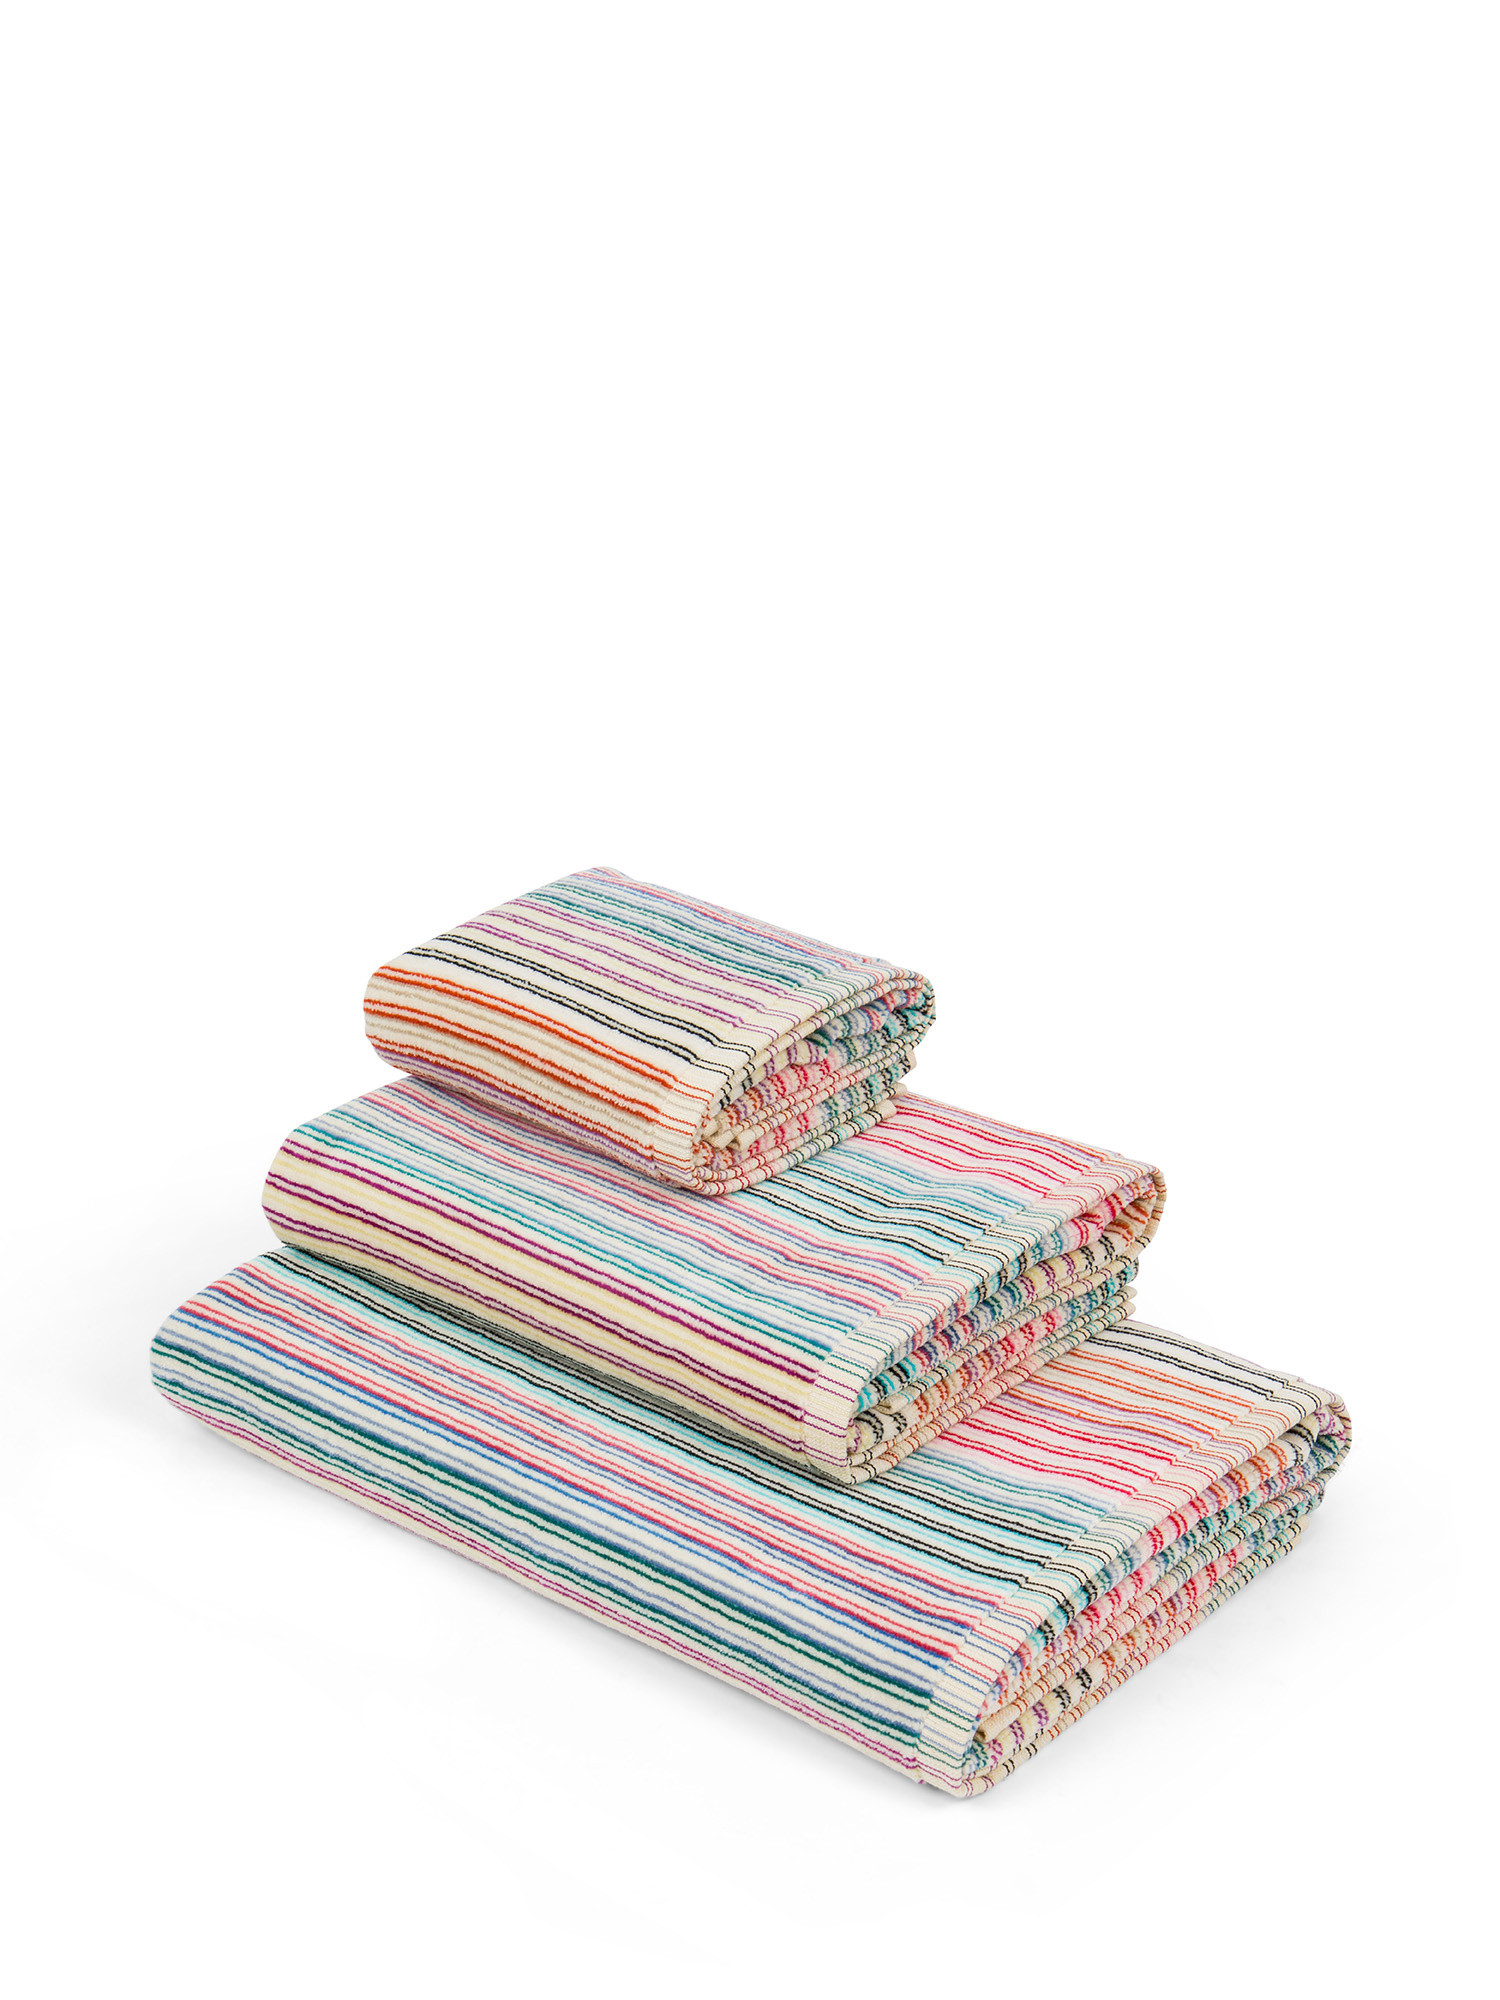 Asciugamano in spugna di cotone motivo righine, Multicolor, large image number 0